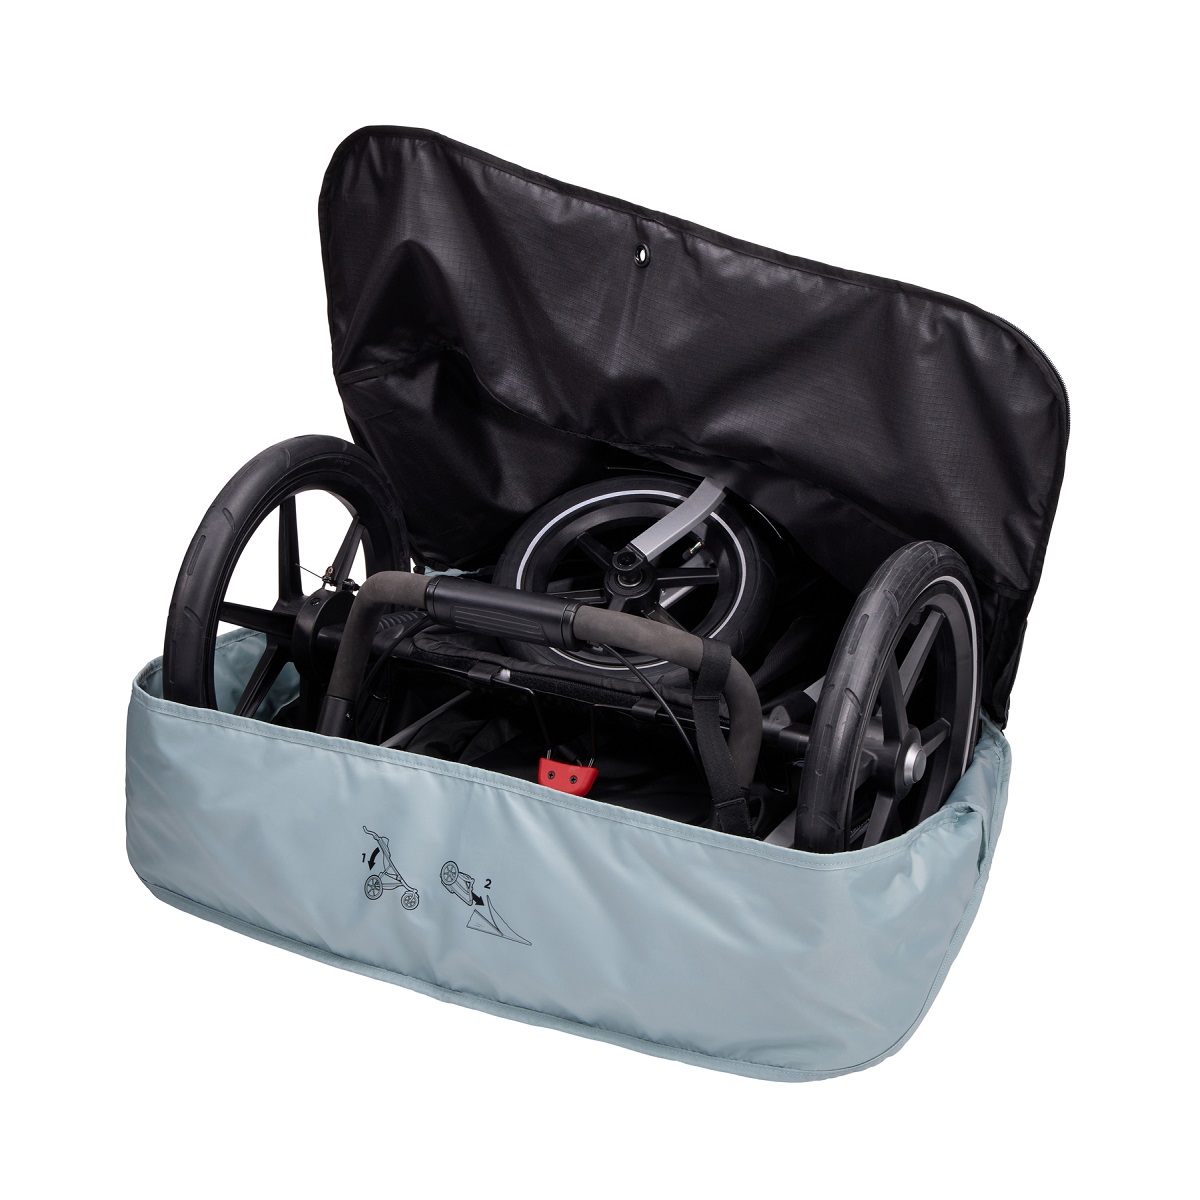 Thule stroller travel bag - putna torba za kolica